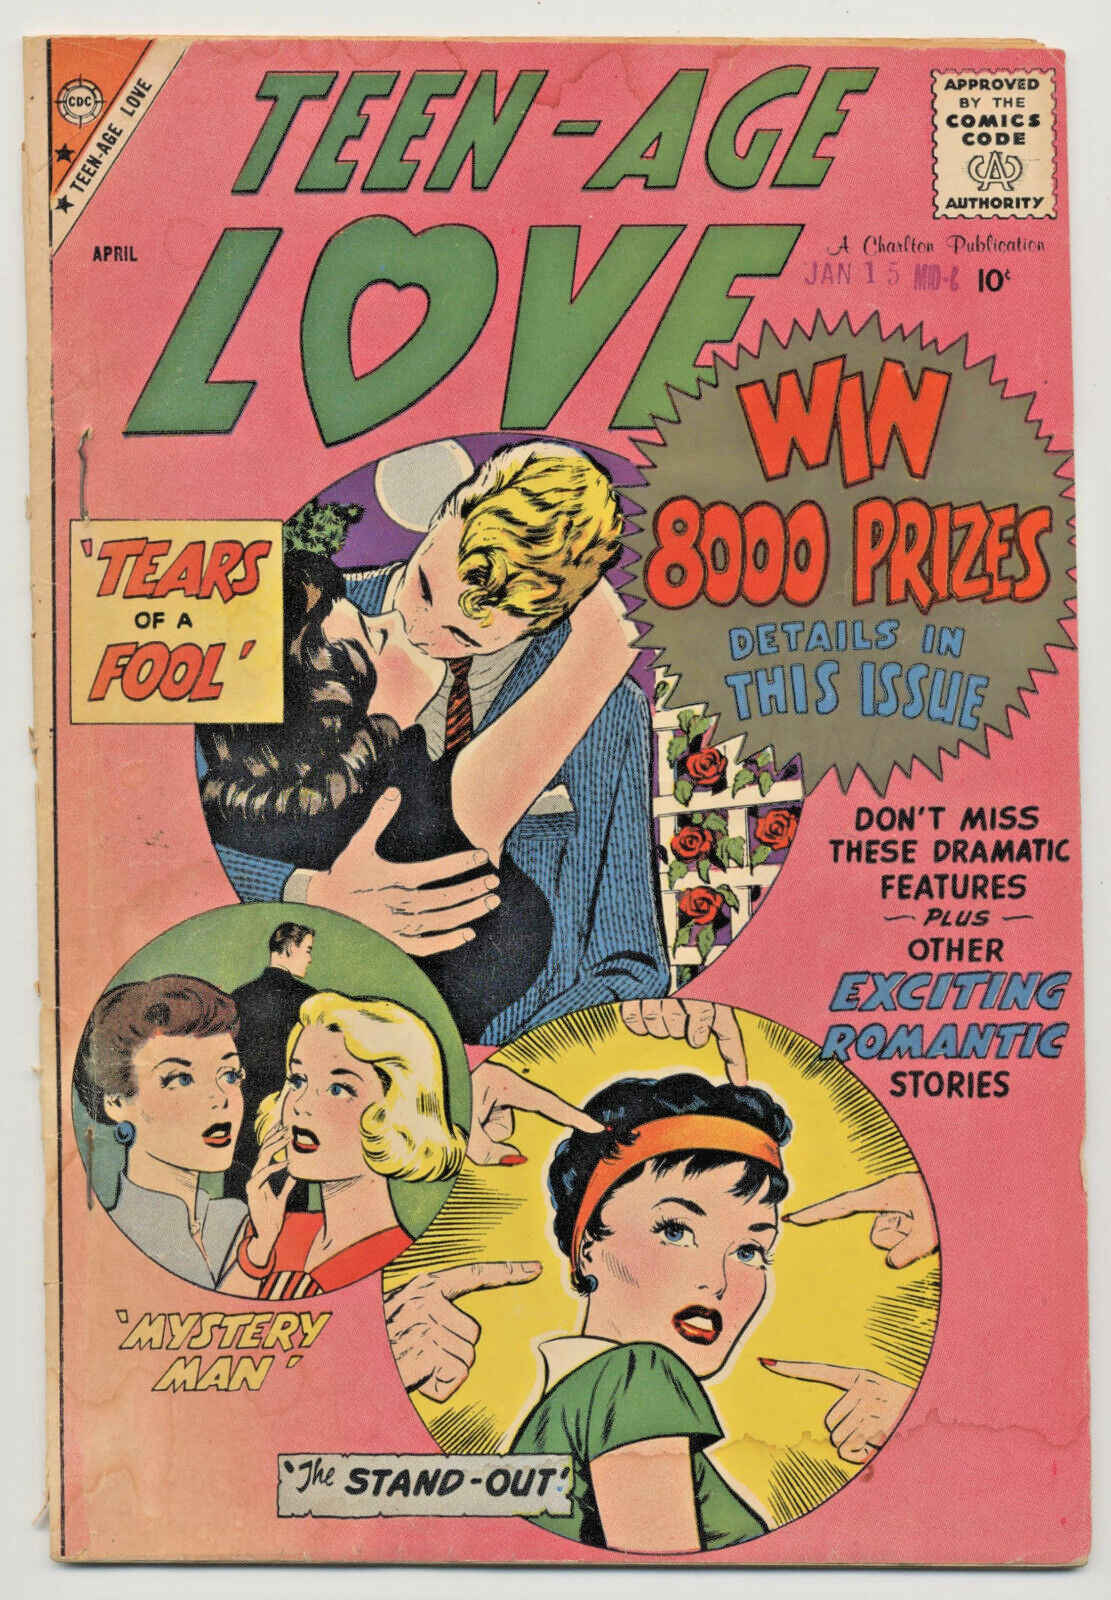 Teen-Age Love Vol. 2 No. 8 - April, 1959